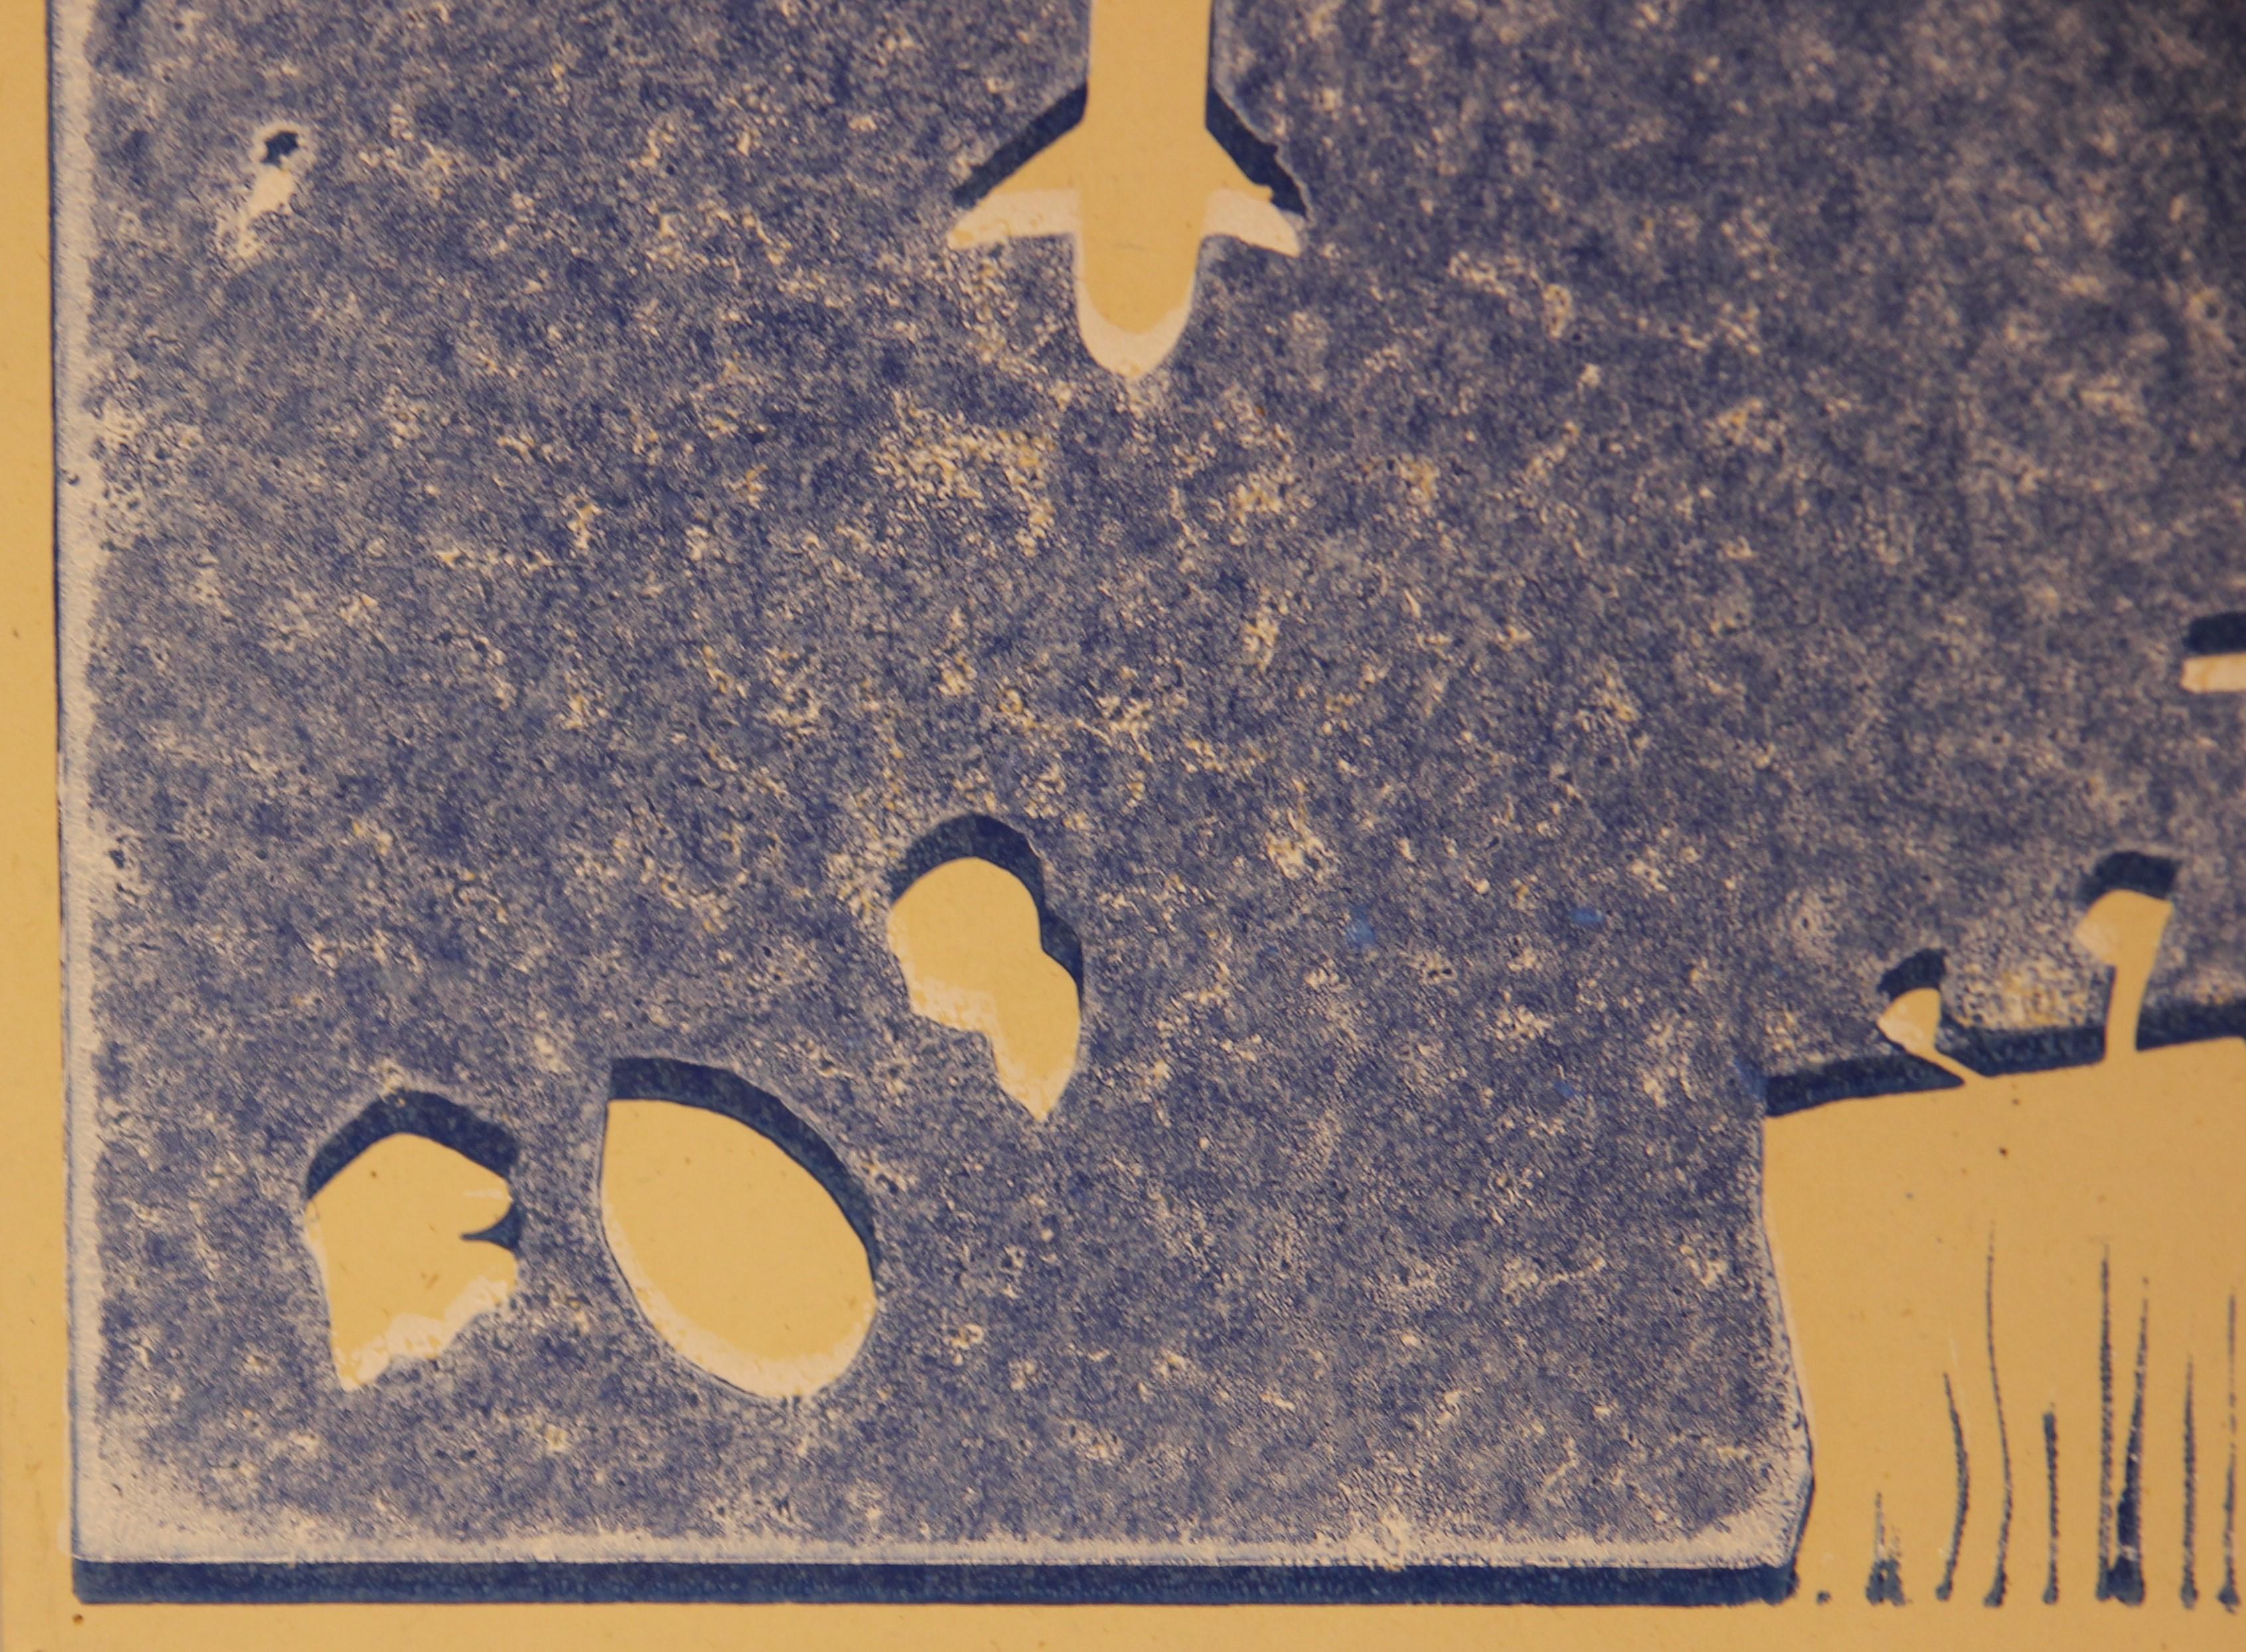 Blauer surrealistischer Blockdruck der texanischen Künstlerin Josefa Vaughan zum Thema Weltraum. Die abstrakten Formen in Gelbtönen schaffen eine skurrile Landschaft. Auf der Rückseite signiert 